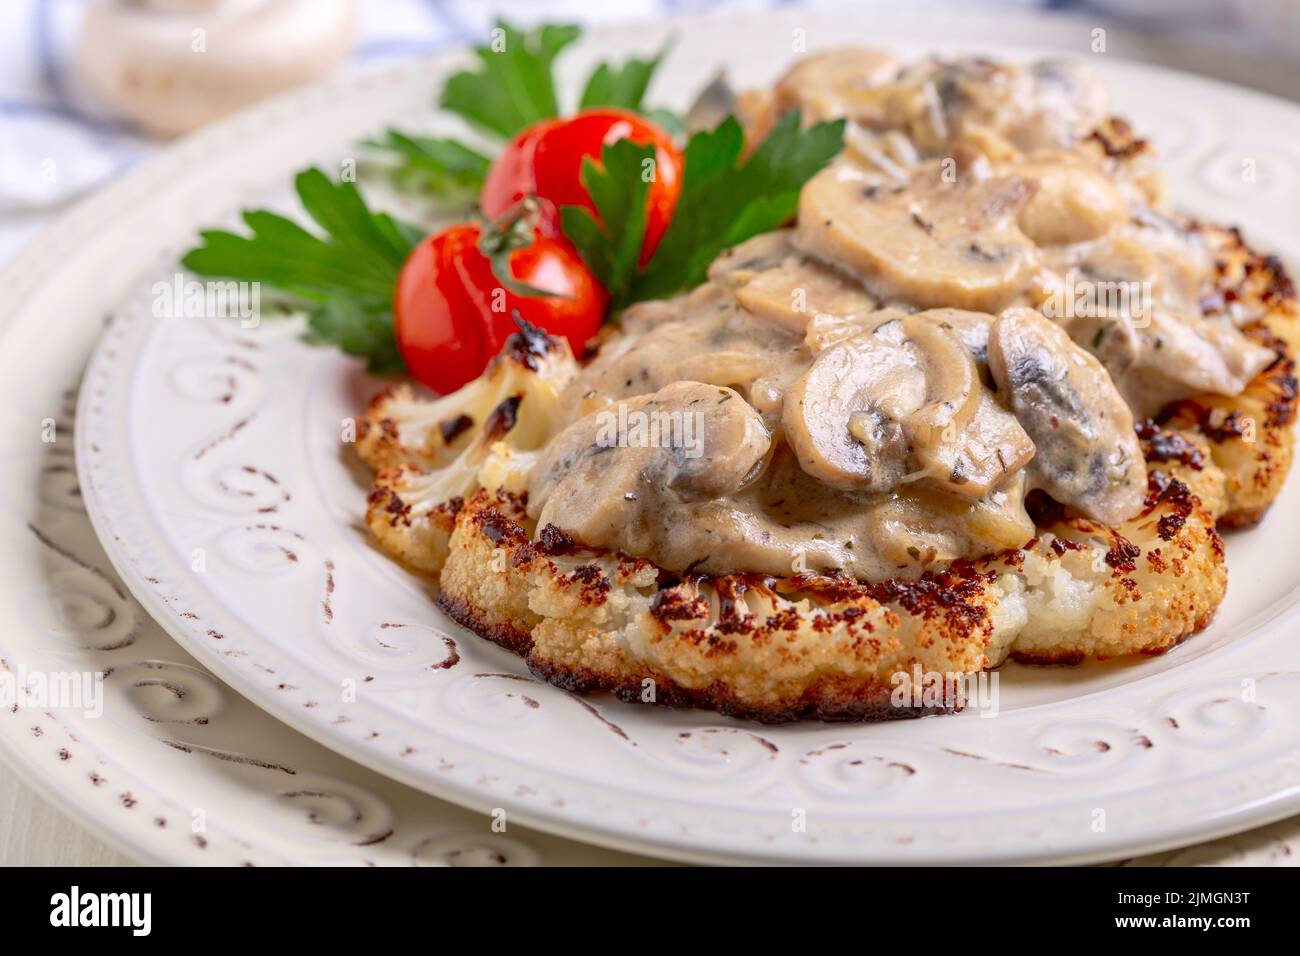 Blumenkohlsteak mit Pilzen. Vegetarische Küche. Stockfoto